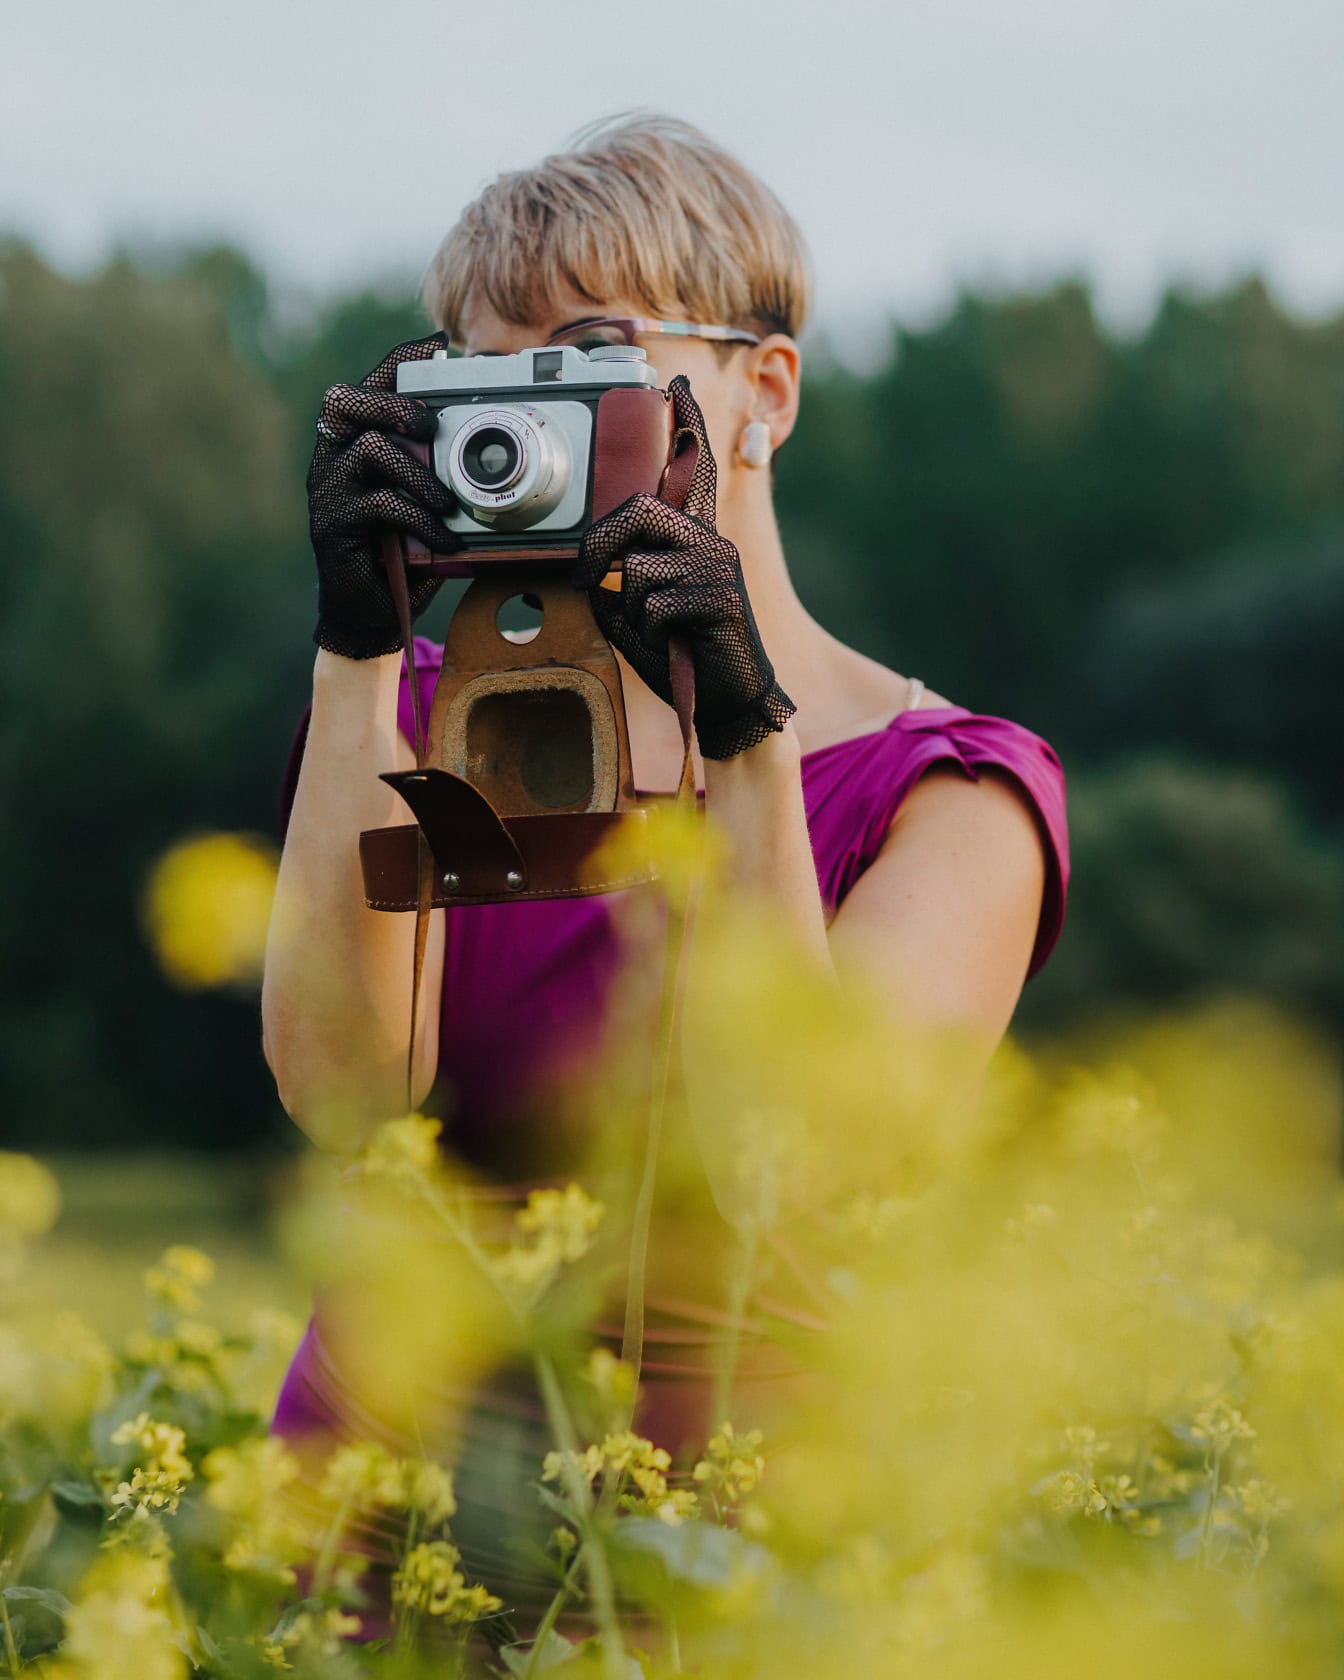 Chân dung của một nữ nhiếp ảnh gia đeo găng tay ren và cầm một máy ảnh analog cũ trước mặt trong một cánh đồng hoa